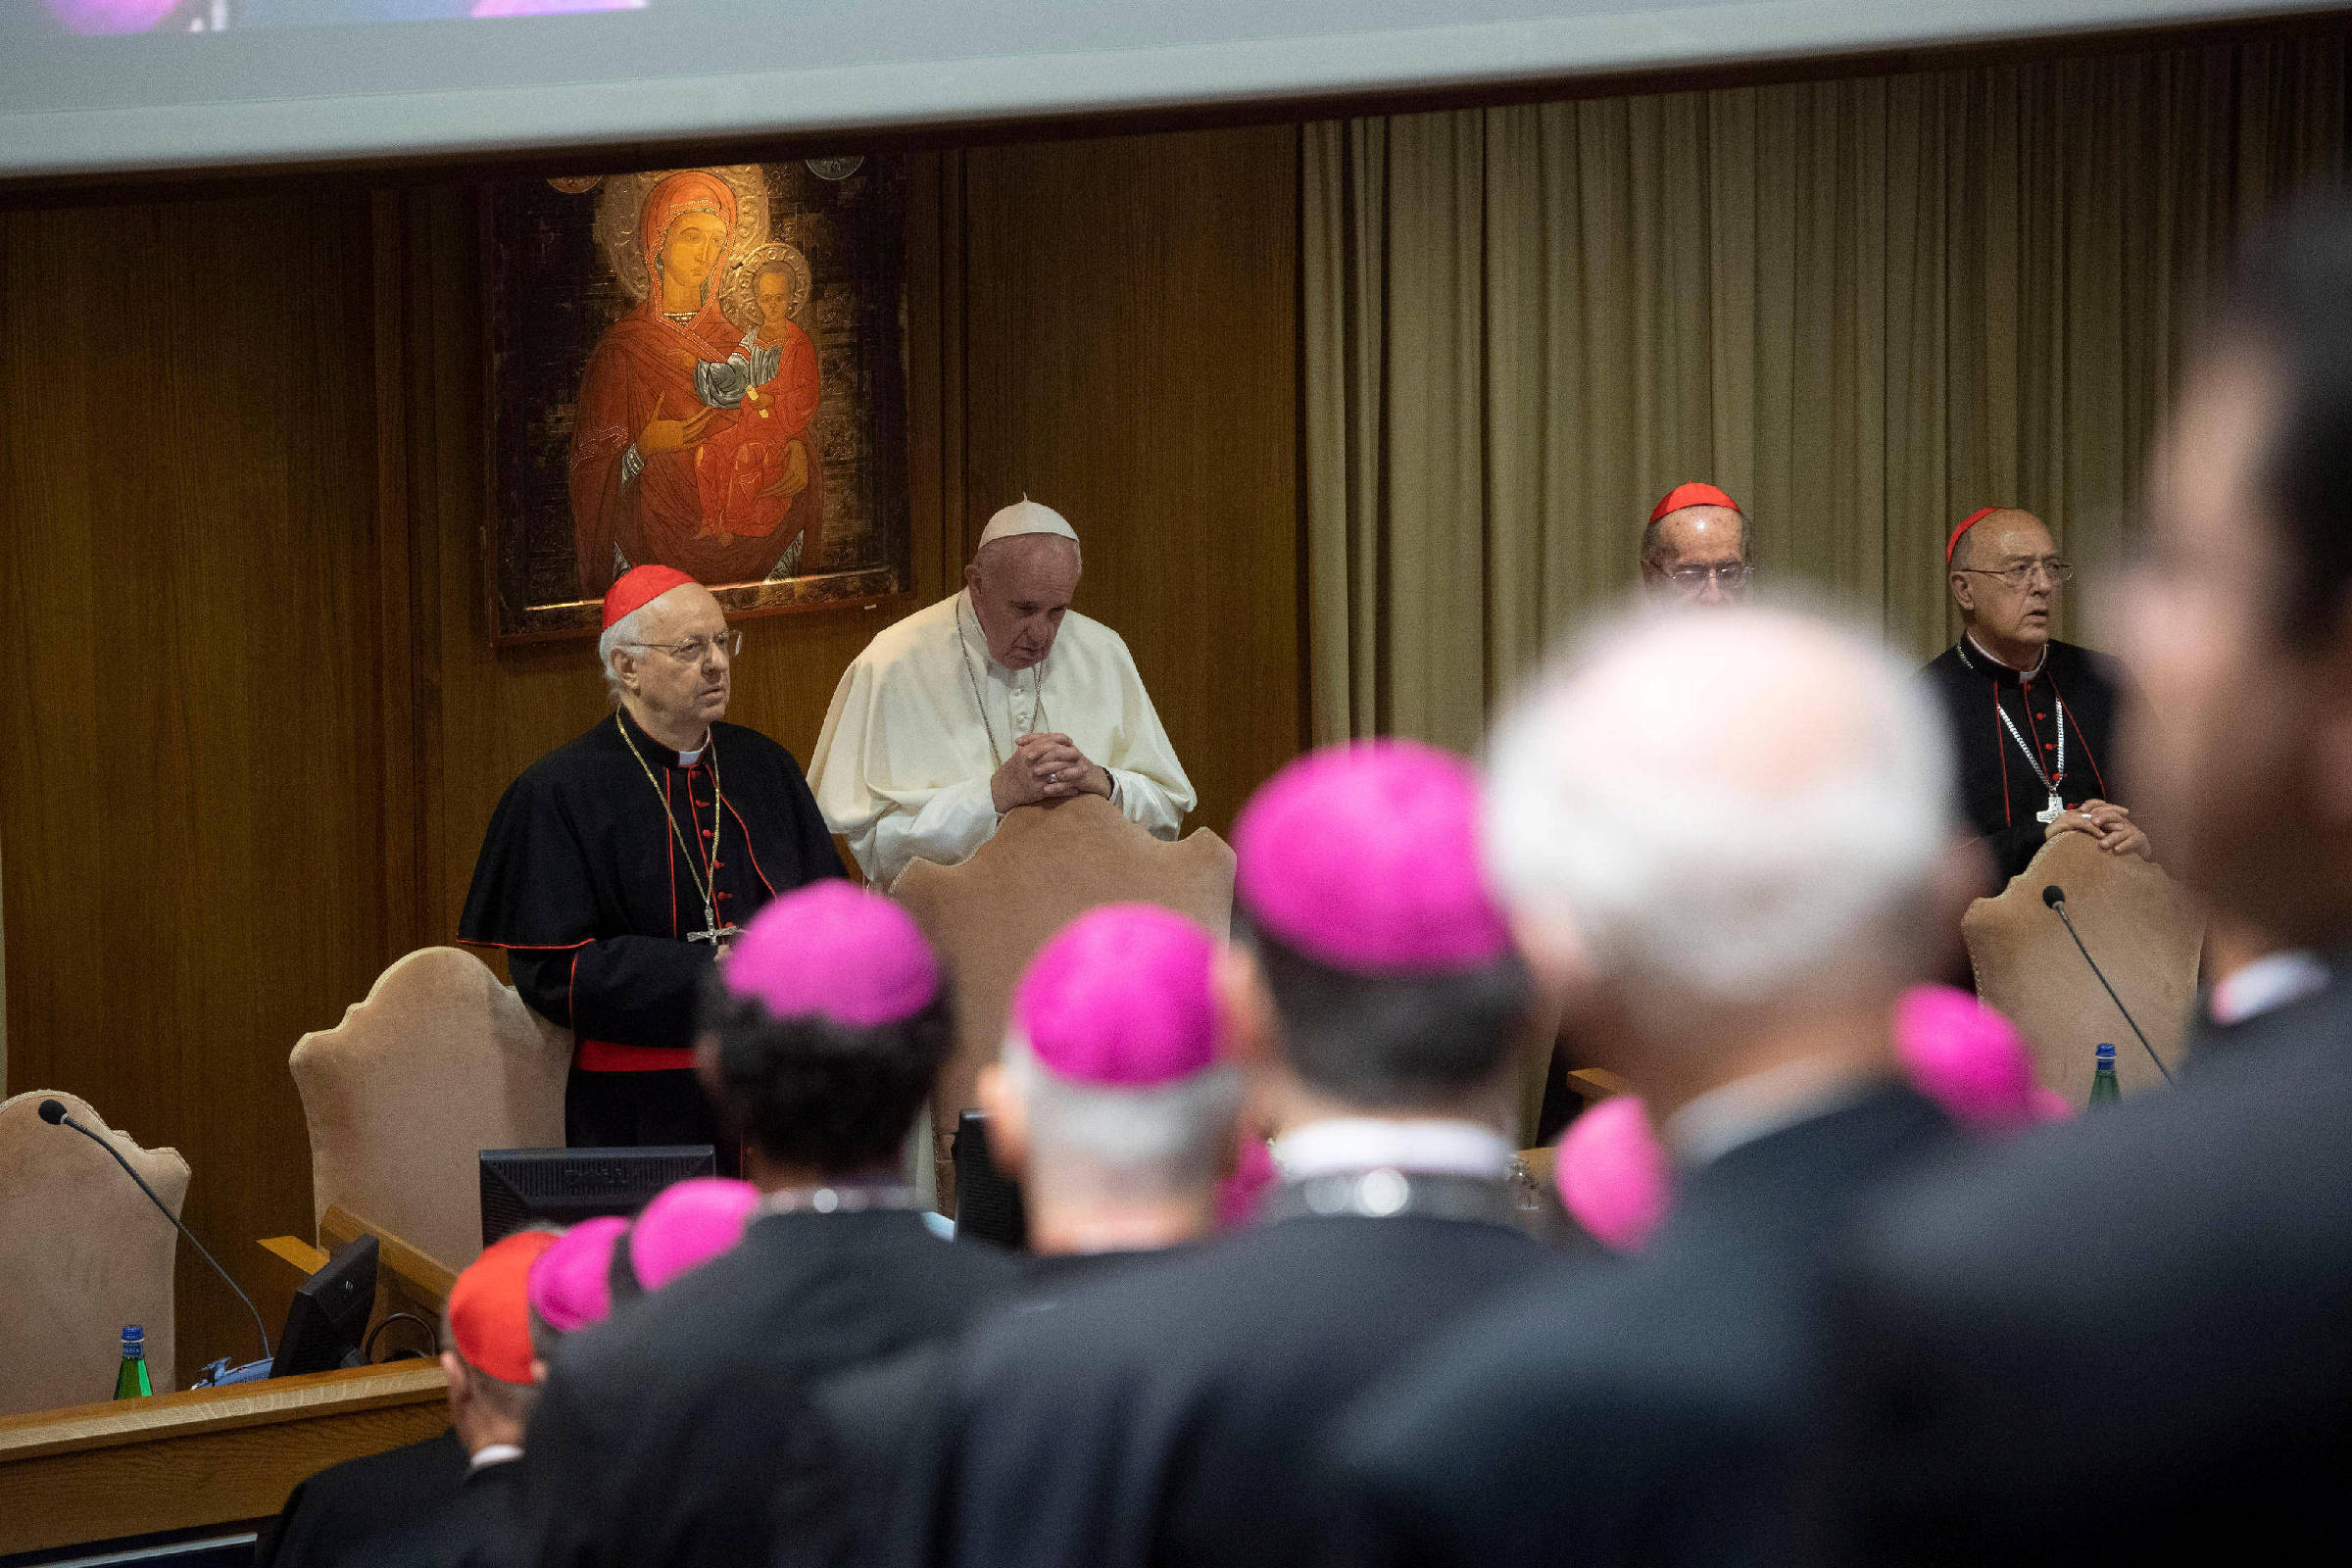 10 anos de Papa Francisco: mulheres no clero e outras 'metas ainda